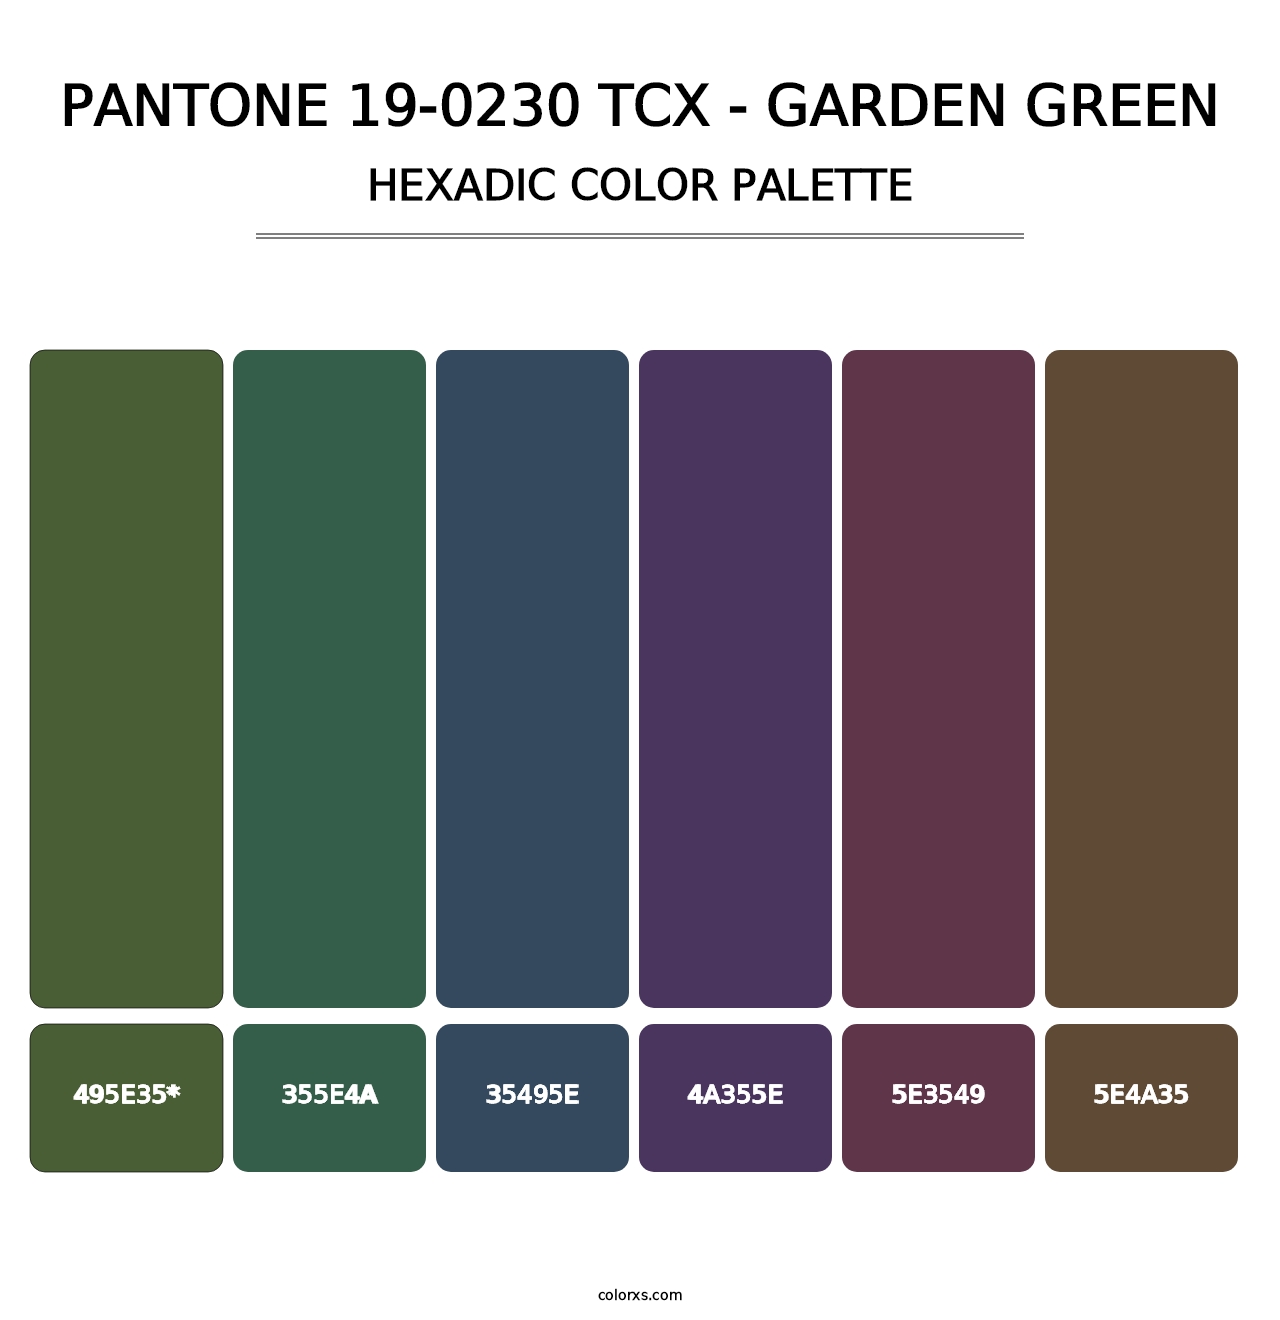 PANTONE 19-0230 TCX - Garden Green - Hexadic Color Palette